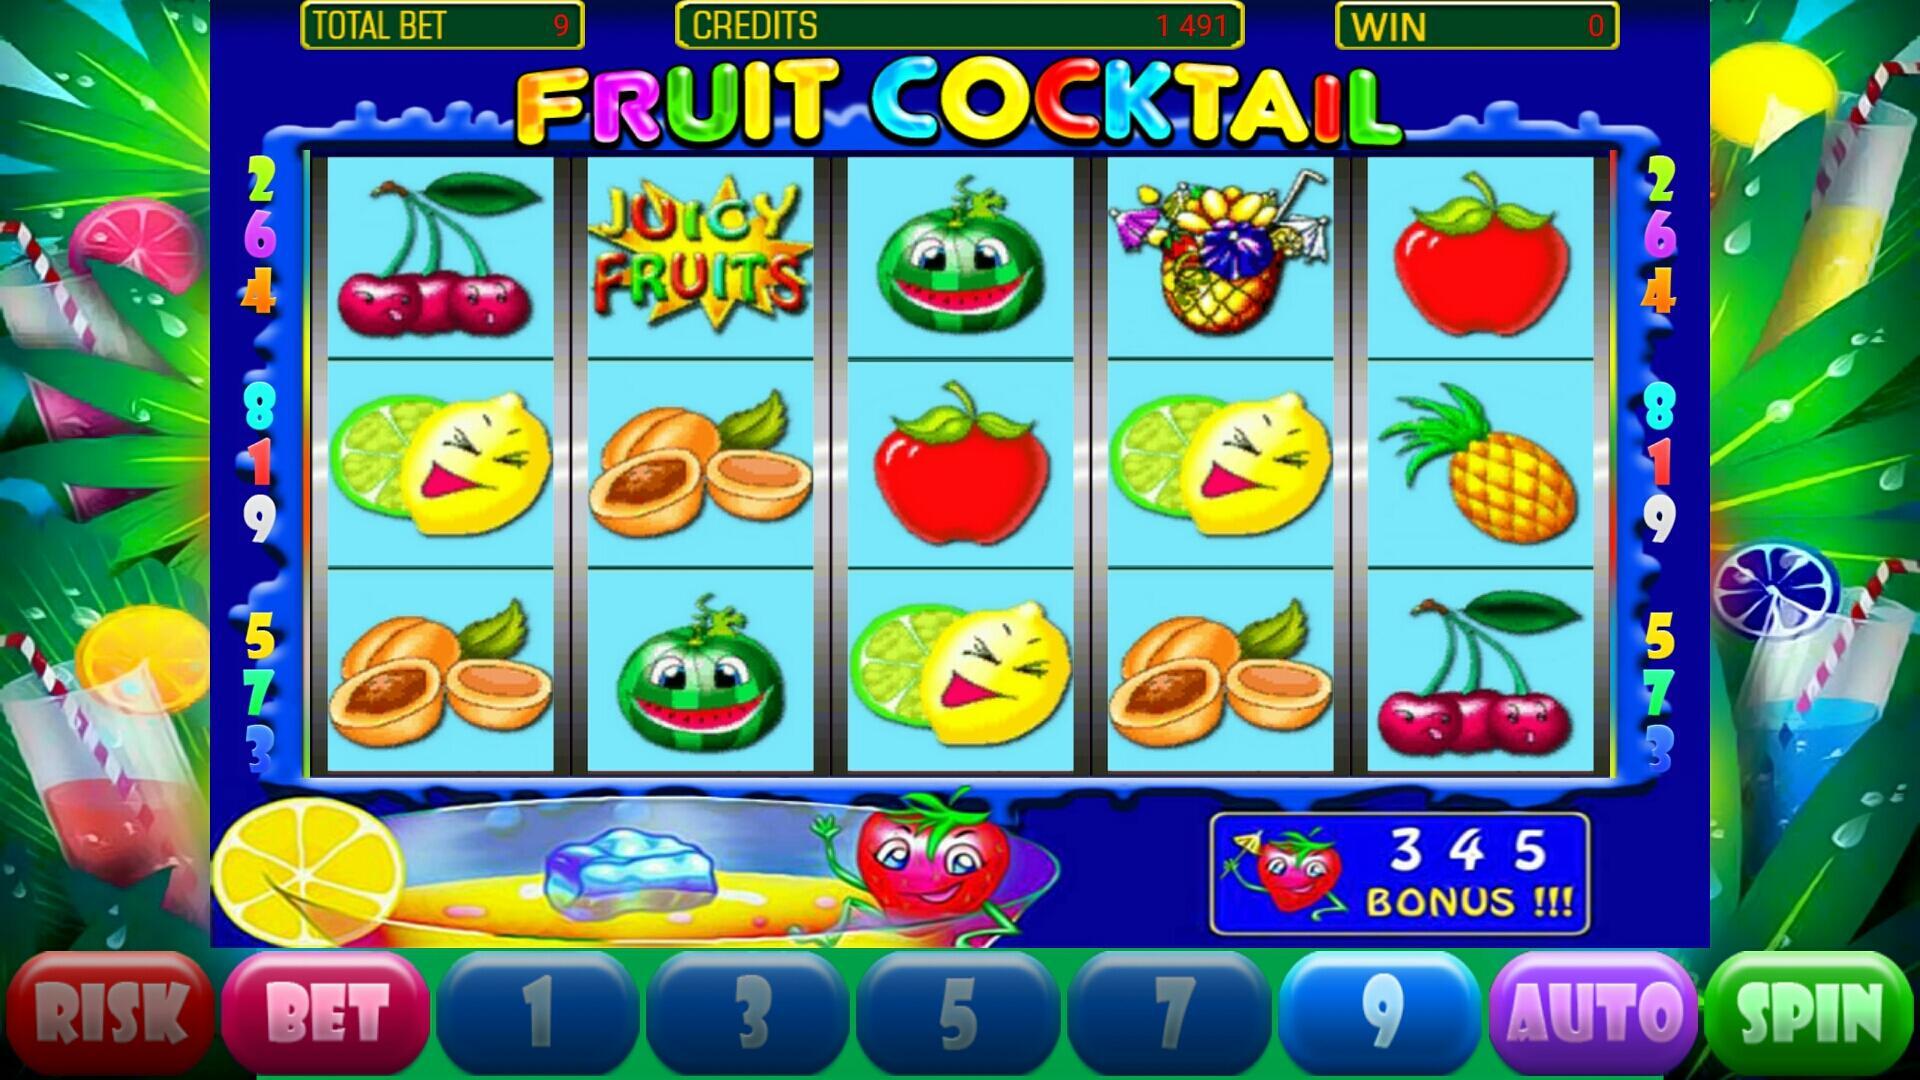 Fruit cocktail описание. Игровой автомат Fruit Cocktail Deluxe. Игра в казино слот с фруктами. Игровые автоматы фруктовый коктейль. Казино игровые автоматы фруктовый коктейль.